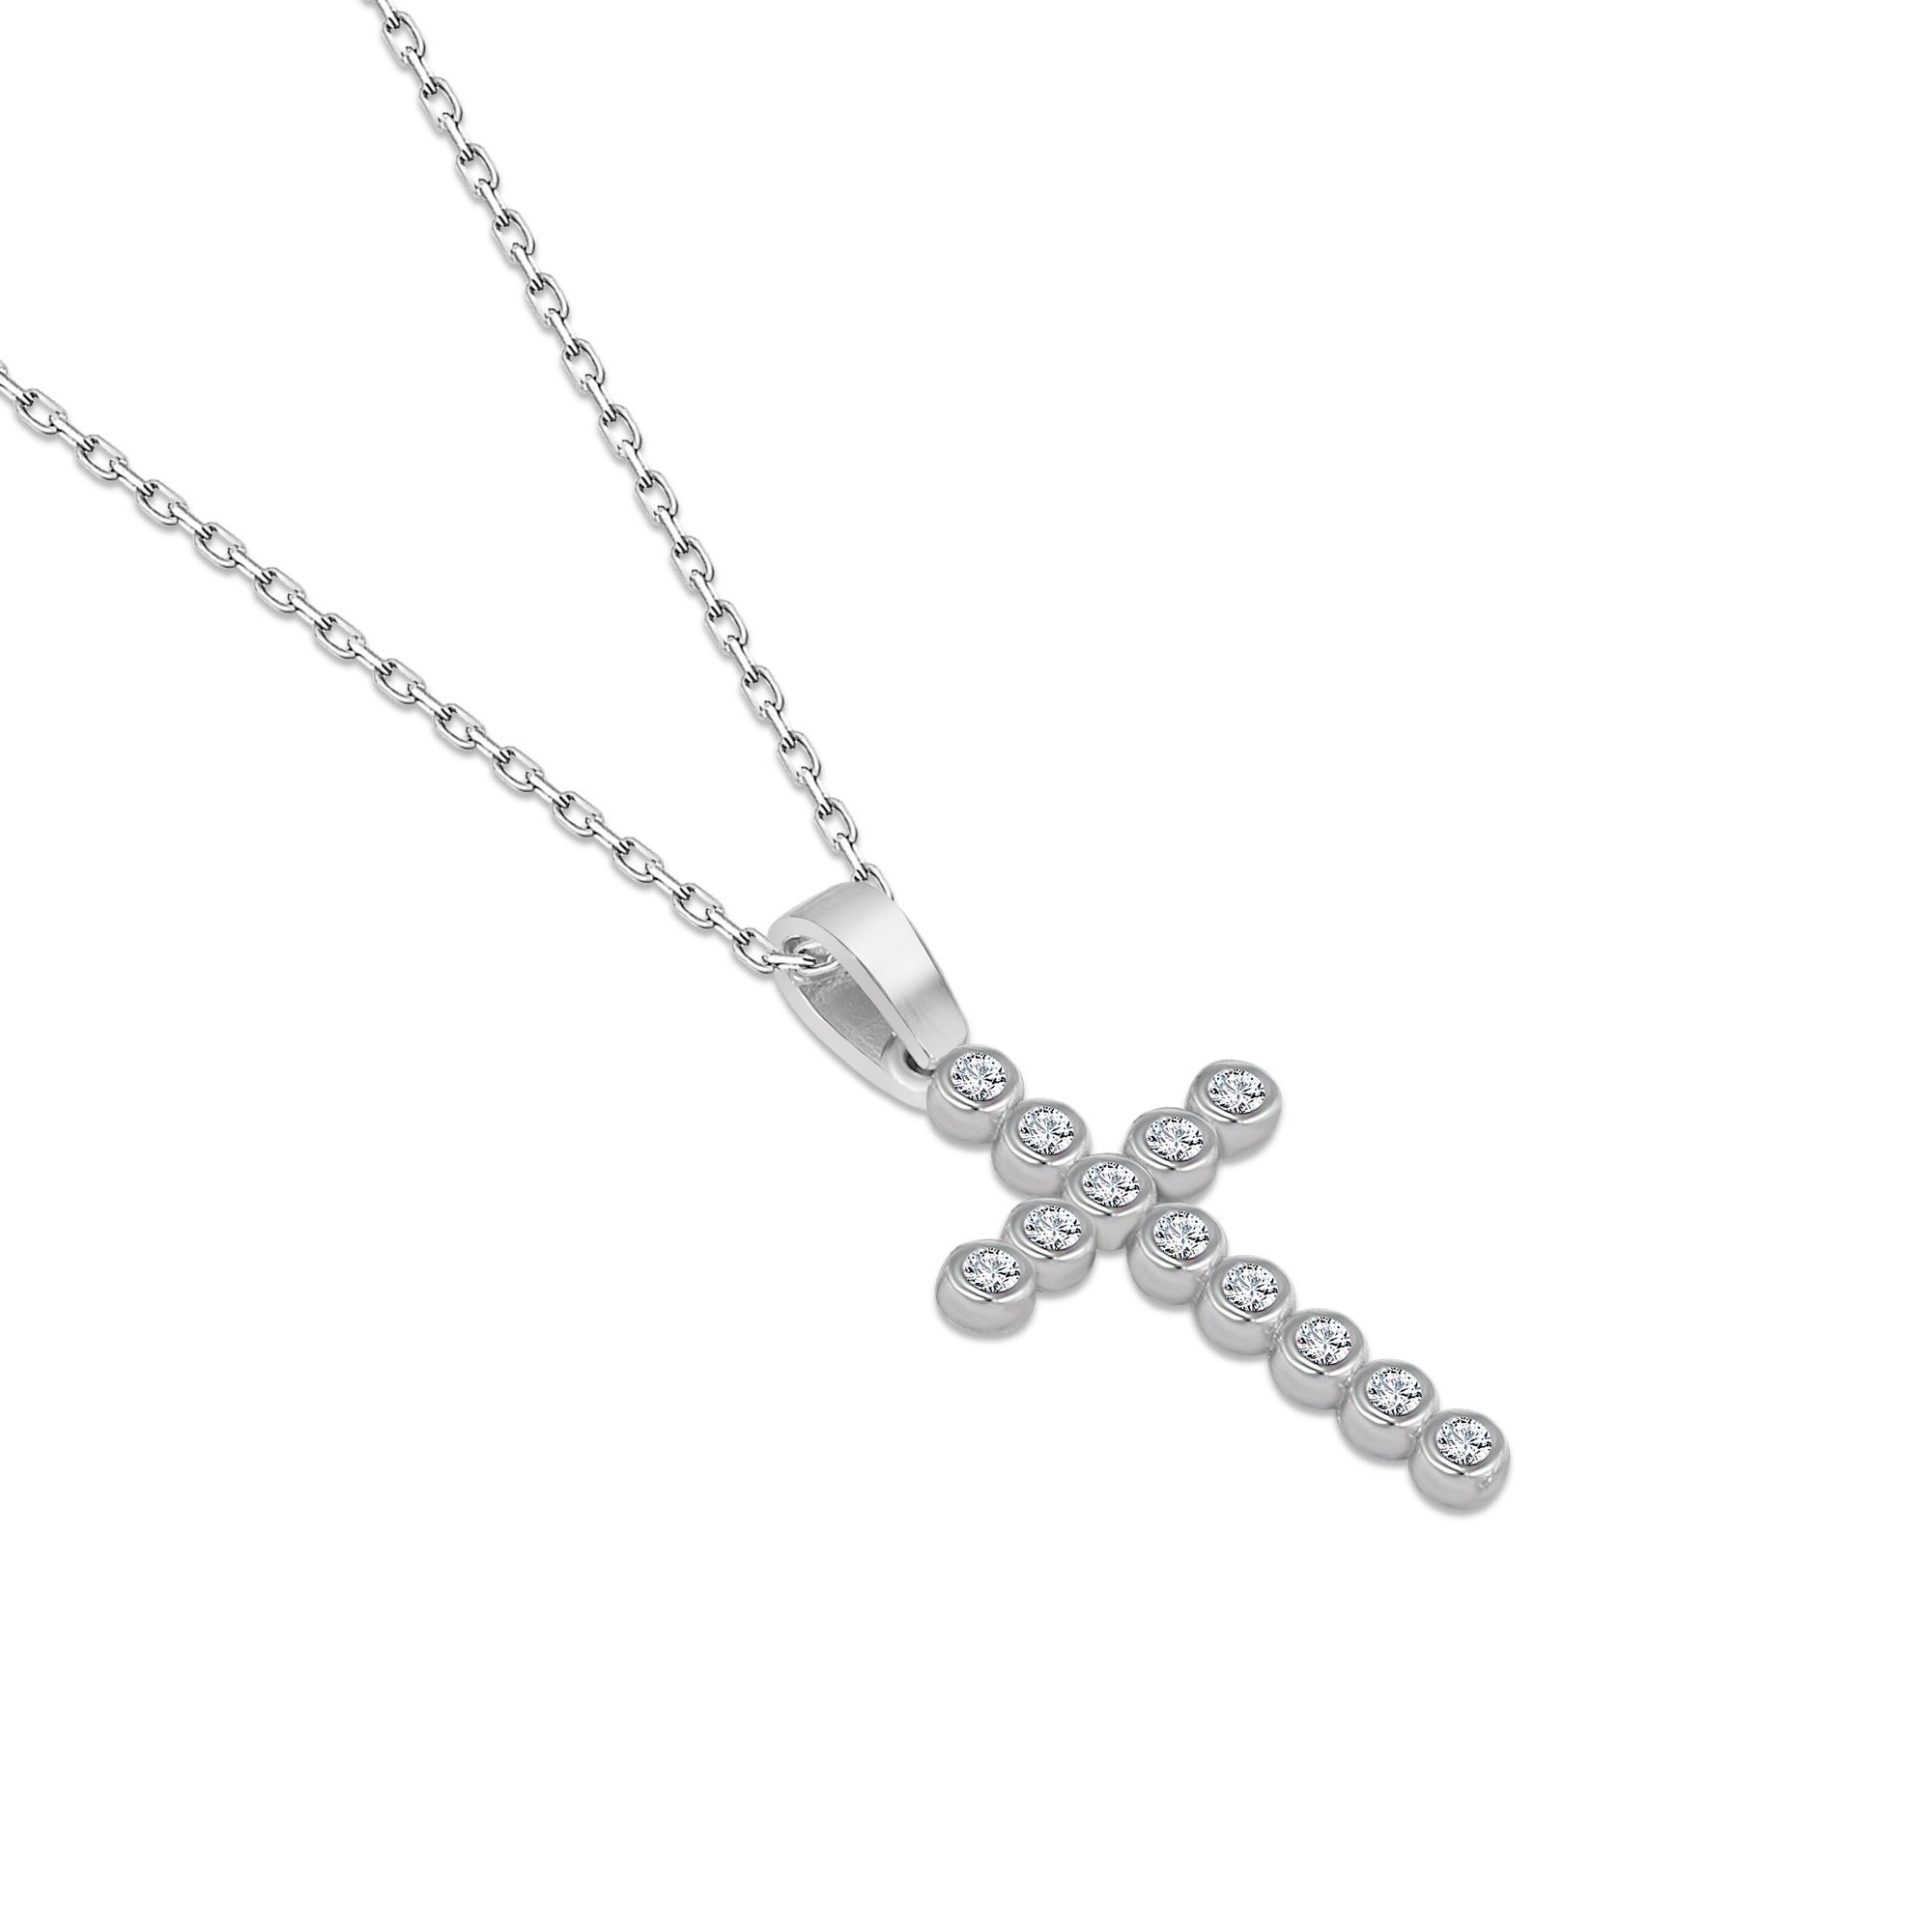 Nicole mit 925 Kreuz 40-45 Silber Halskette cm Manson Kette Anhänger